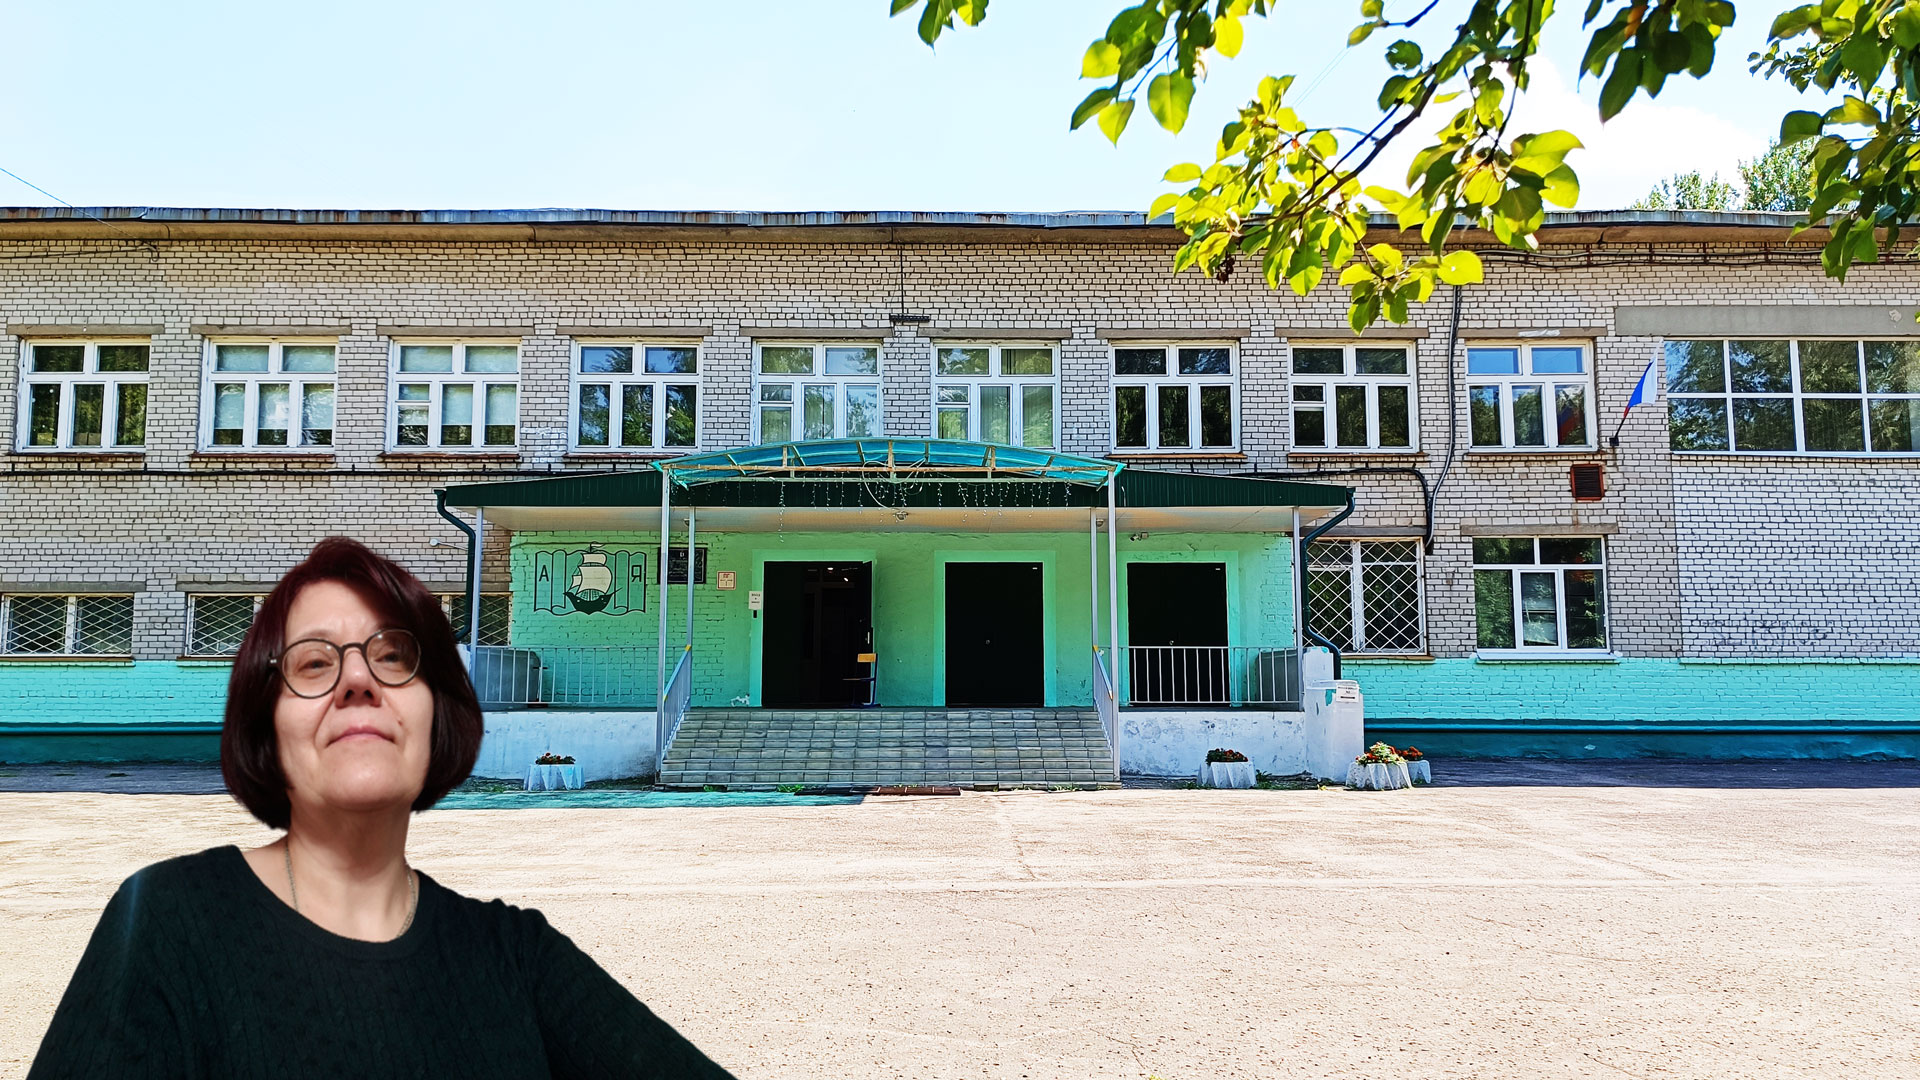 Школа 23 Ярославль: центральный вход в здание школьной организации.